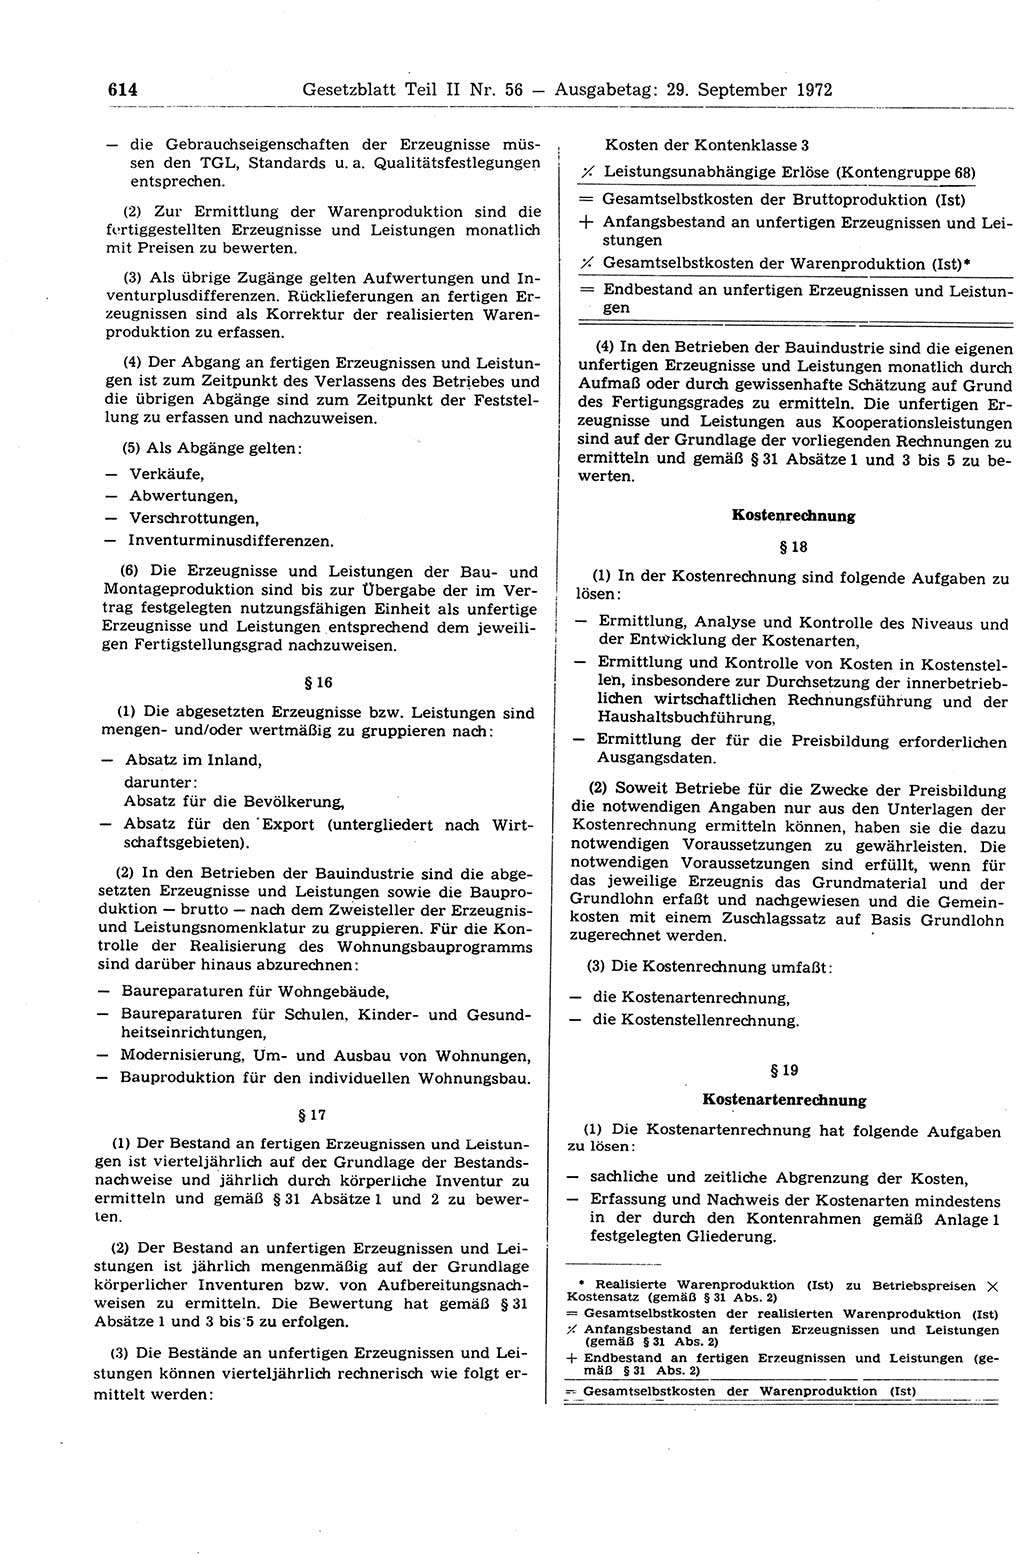 Gesetzblatt (GBl.) der Deutschen Demokratischen Republik (DDR) Teil ⅠⅠ 1972, Seite 614 (GBl. DDR ⅠⅠ 1972, S. 614)